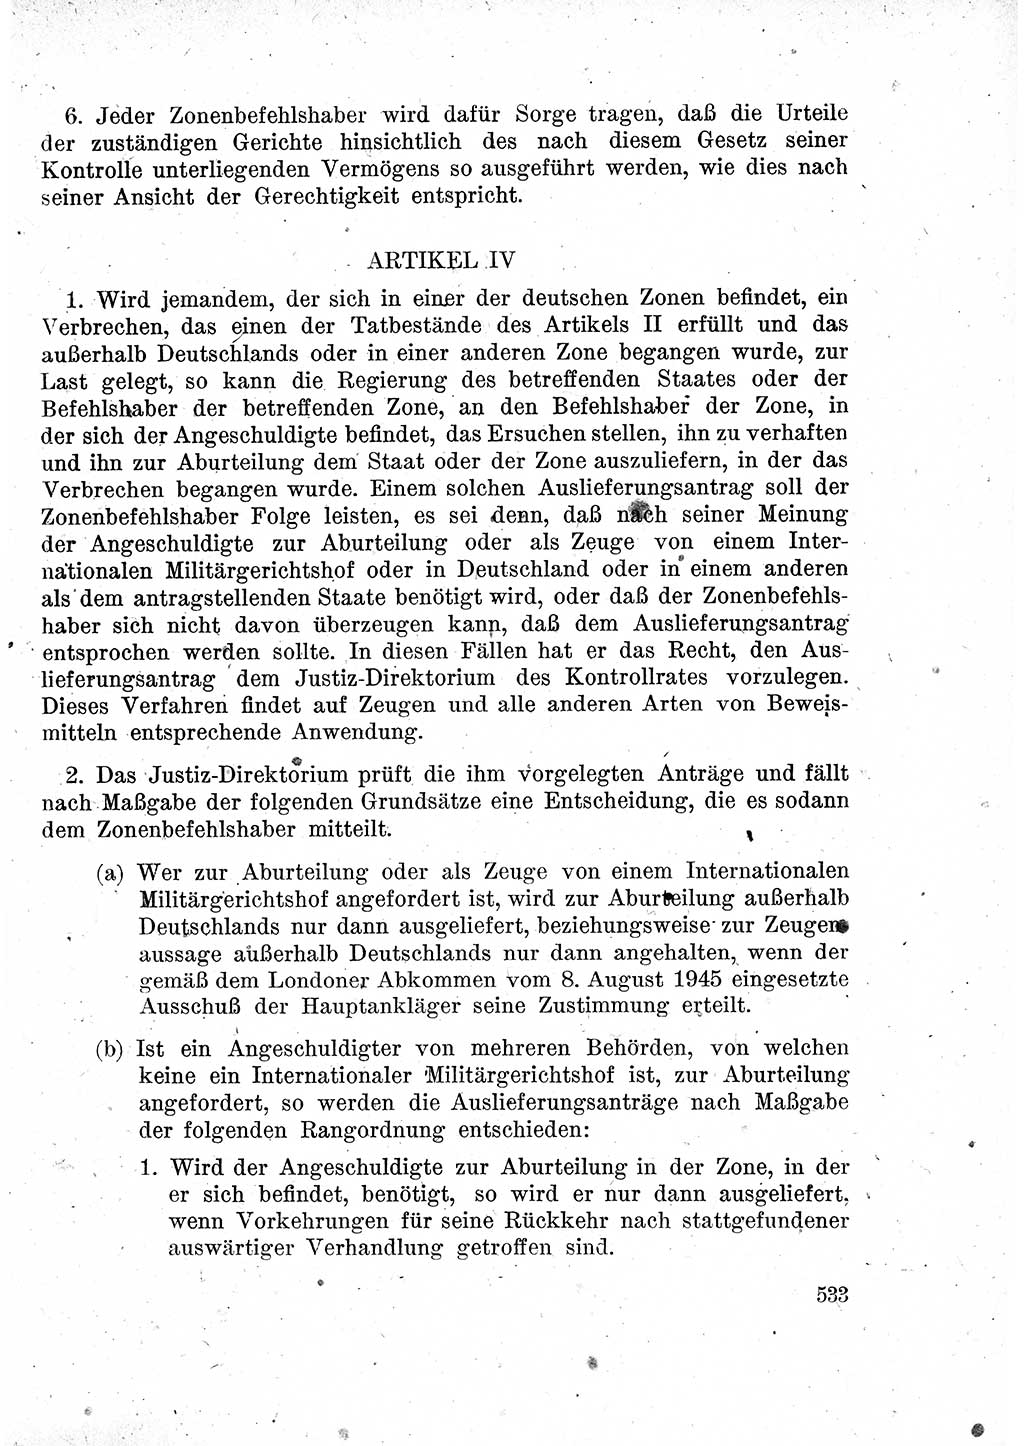 Das Recht der Besatzungsmacht (Deutschland), Proklamationen, Deklerationen, Verordnungen, Gesetze und Bekanntmachungen 1947, Seite 533 (R. Bes. Dtl. 1947, S. 533)